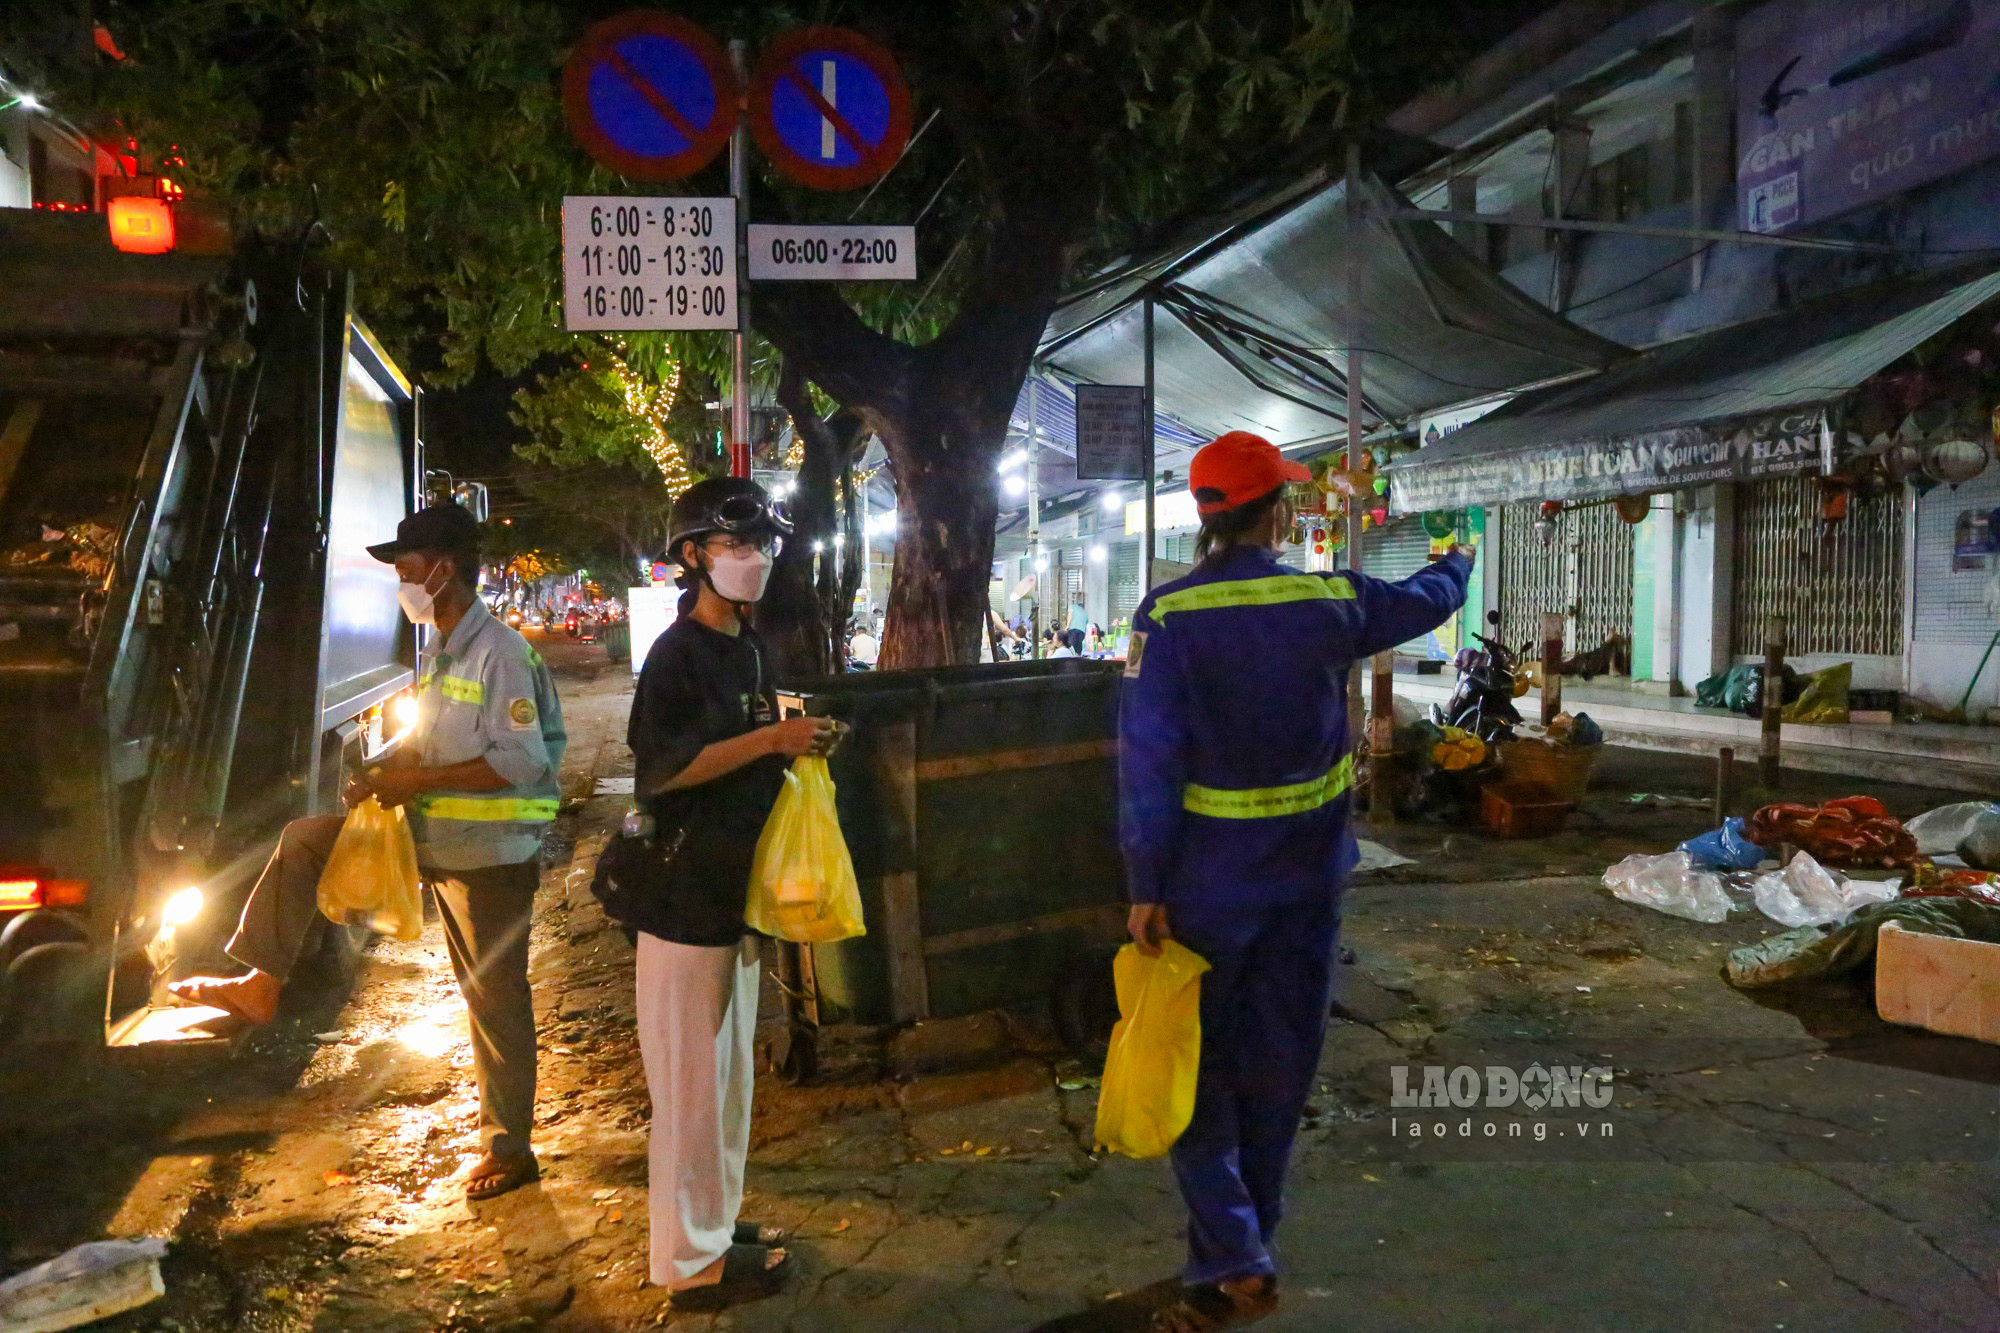 Di chuyển đến khu vực chợ Cồn, các tình nguyện viên thấy một nhóm 5 công nhân dọn về sinh đang làm việc liền tiến tới lễ phép gửi các suất ăn đêm.